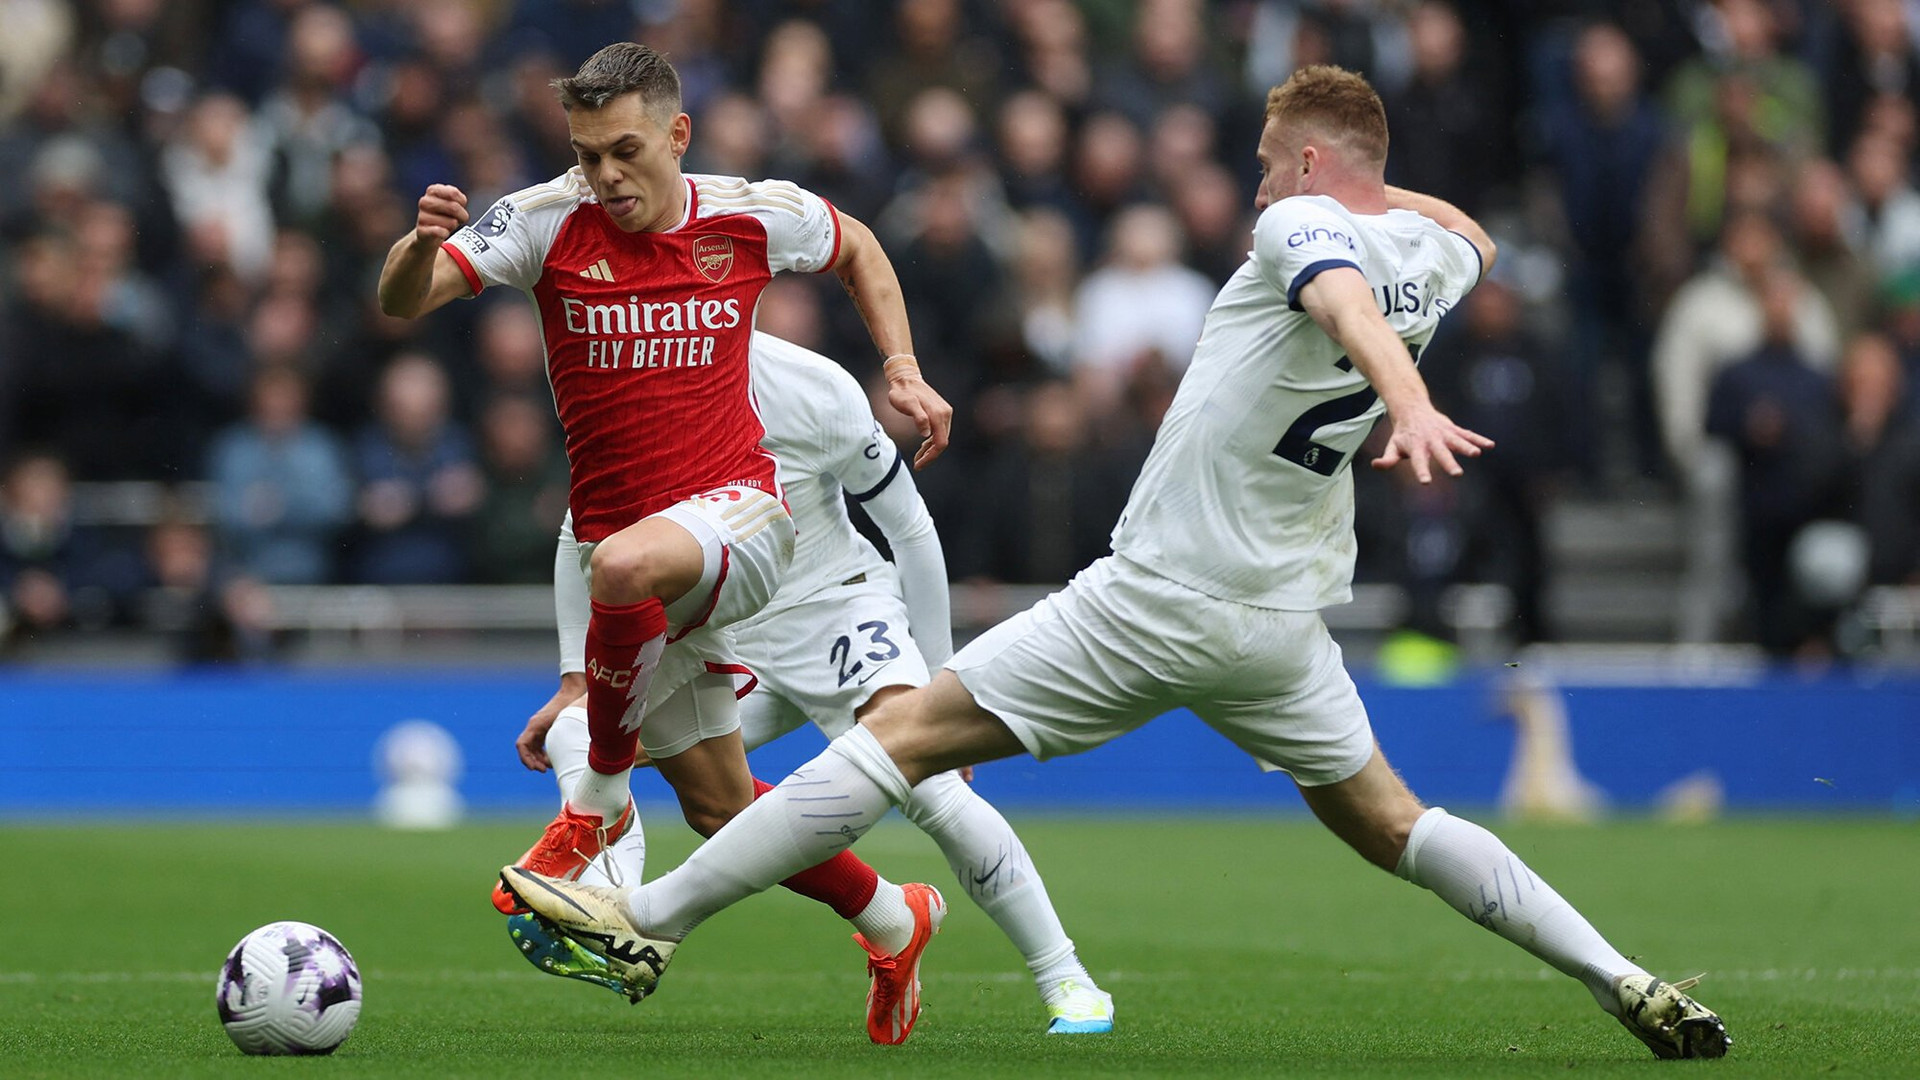 Tottenham ép sân nhưng Arsenal hiệu quả hơn trong hiệp 1. (Ảnh: Reuters)